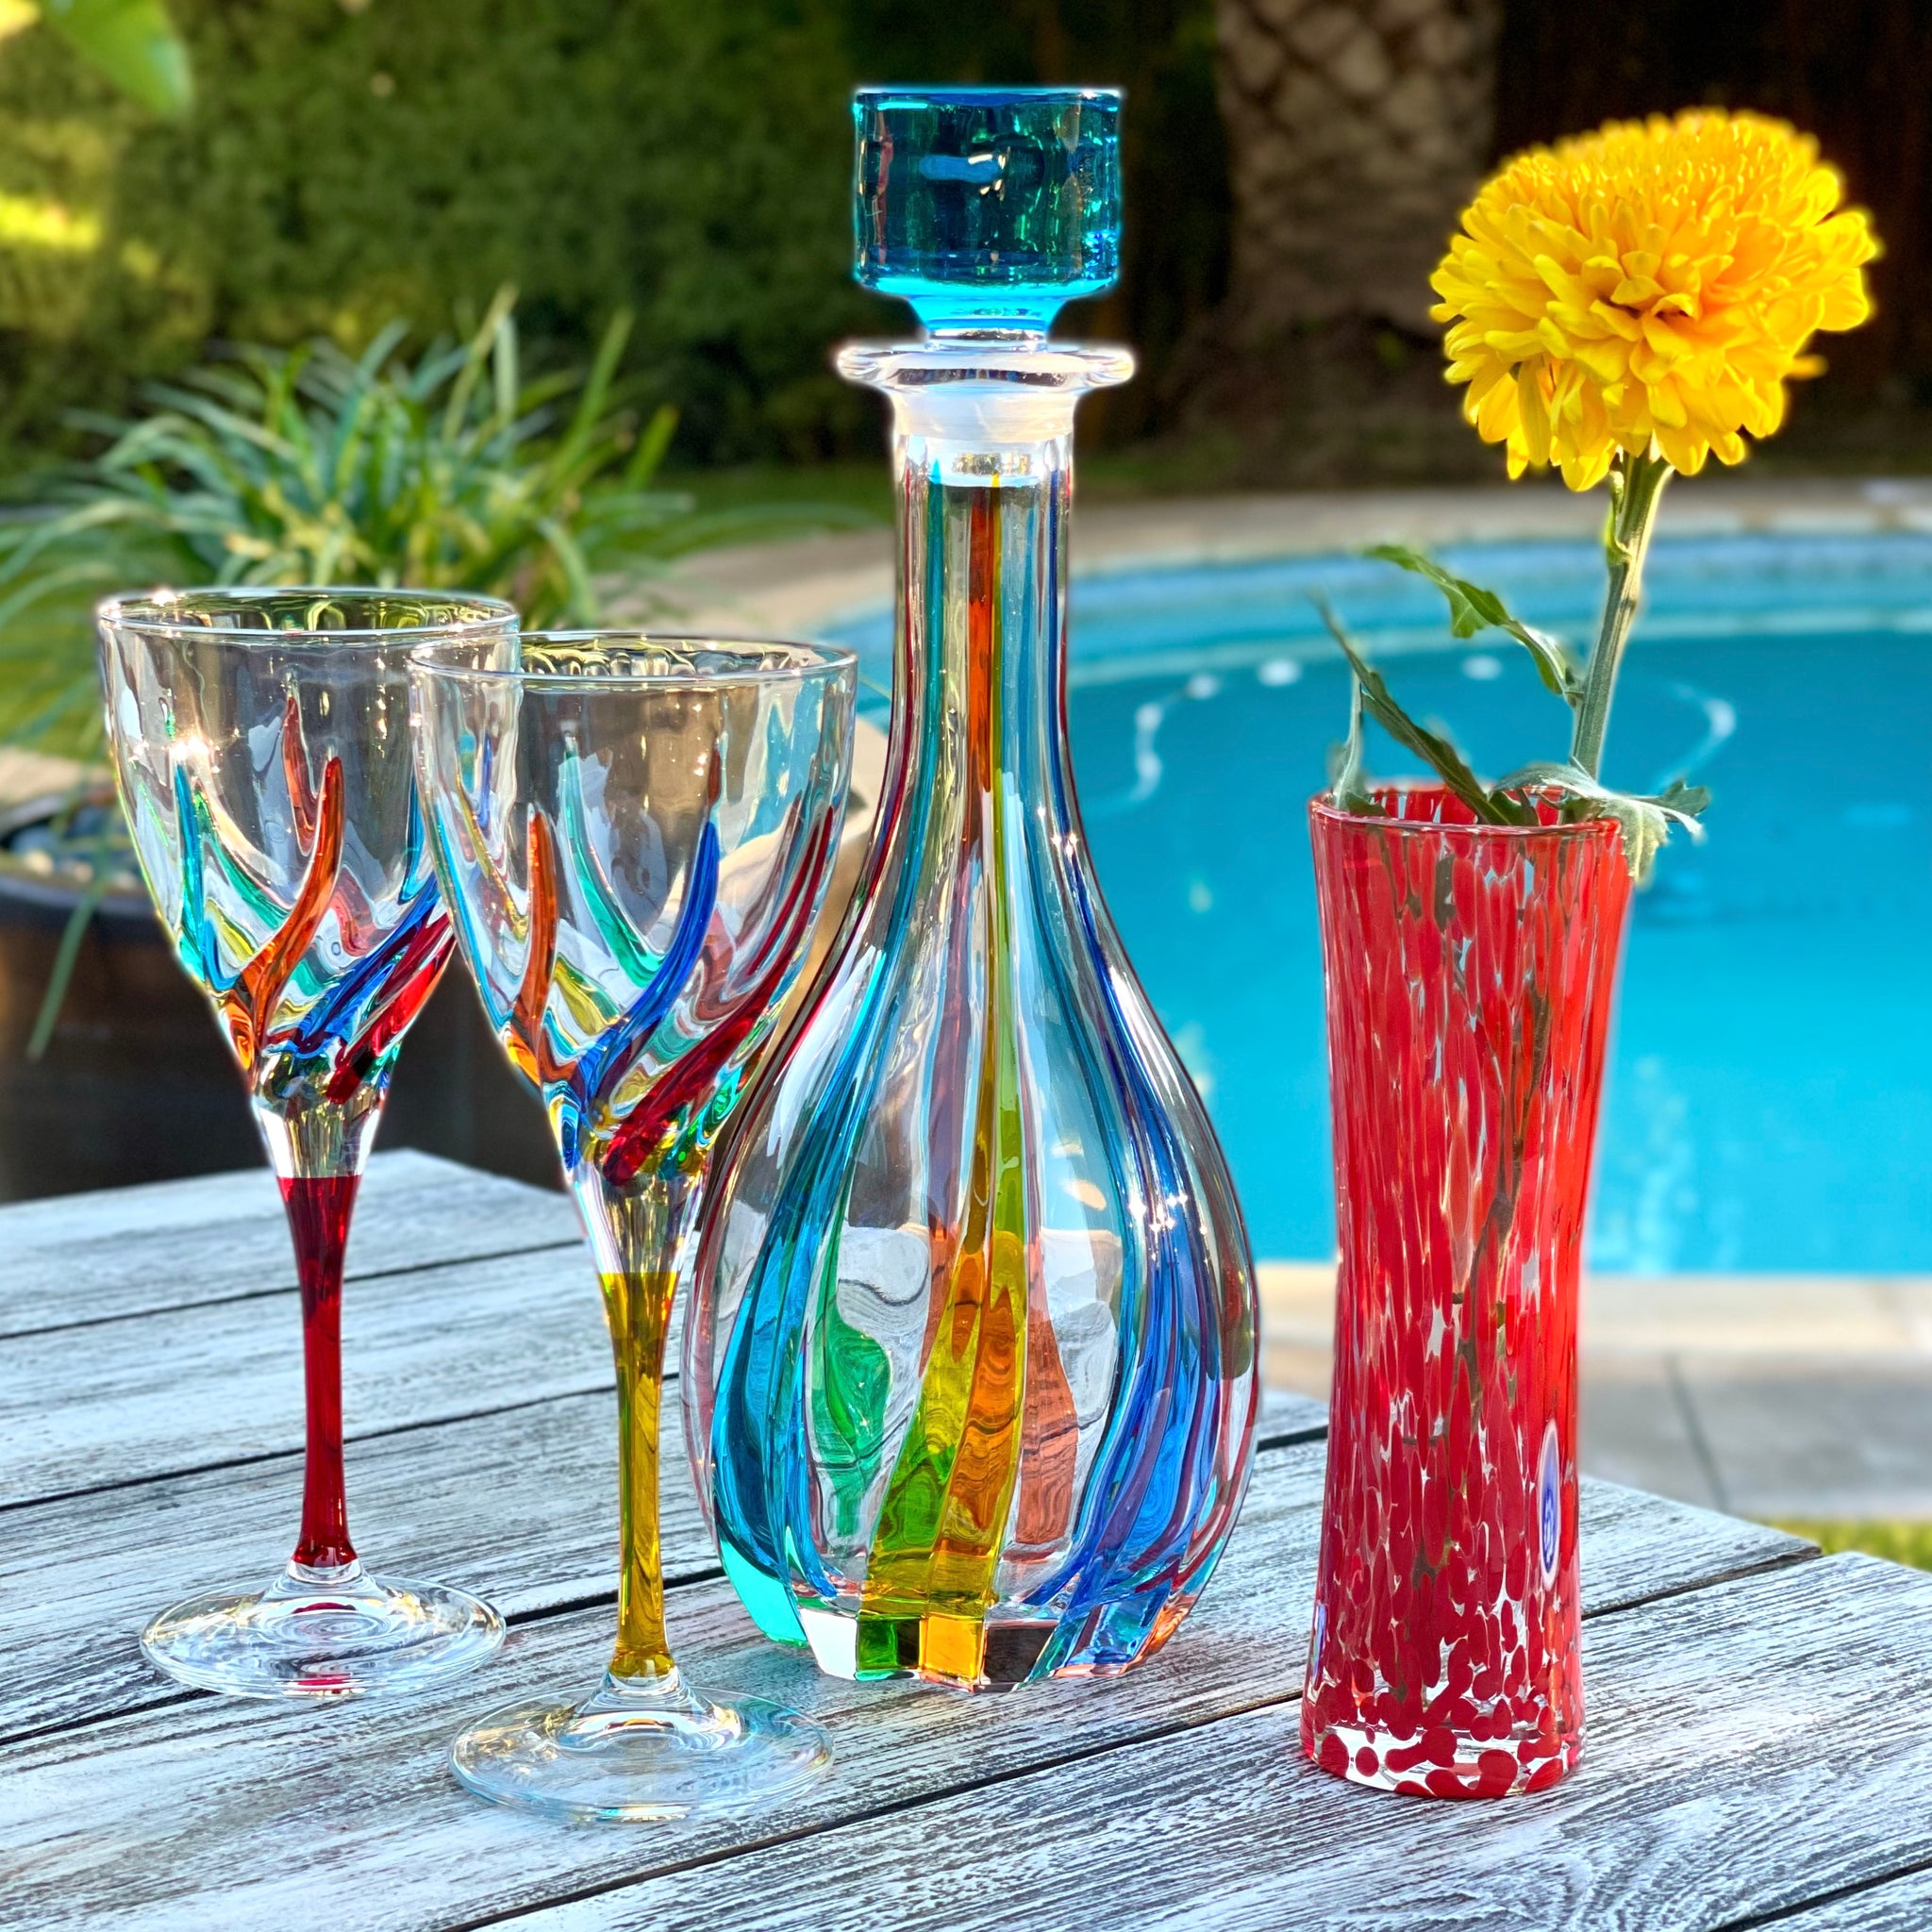 Aqua Tulip Stem Wine Glasses